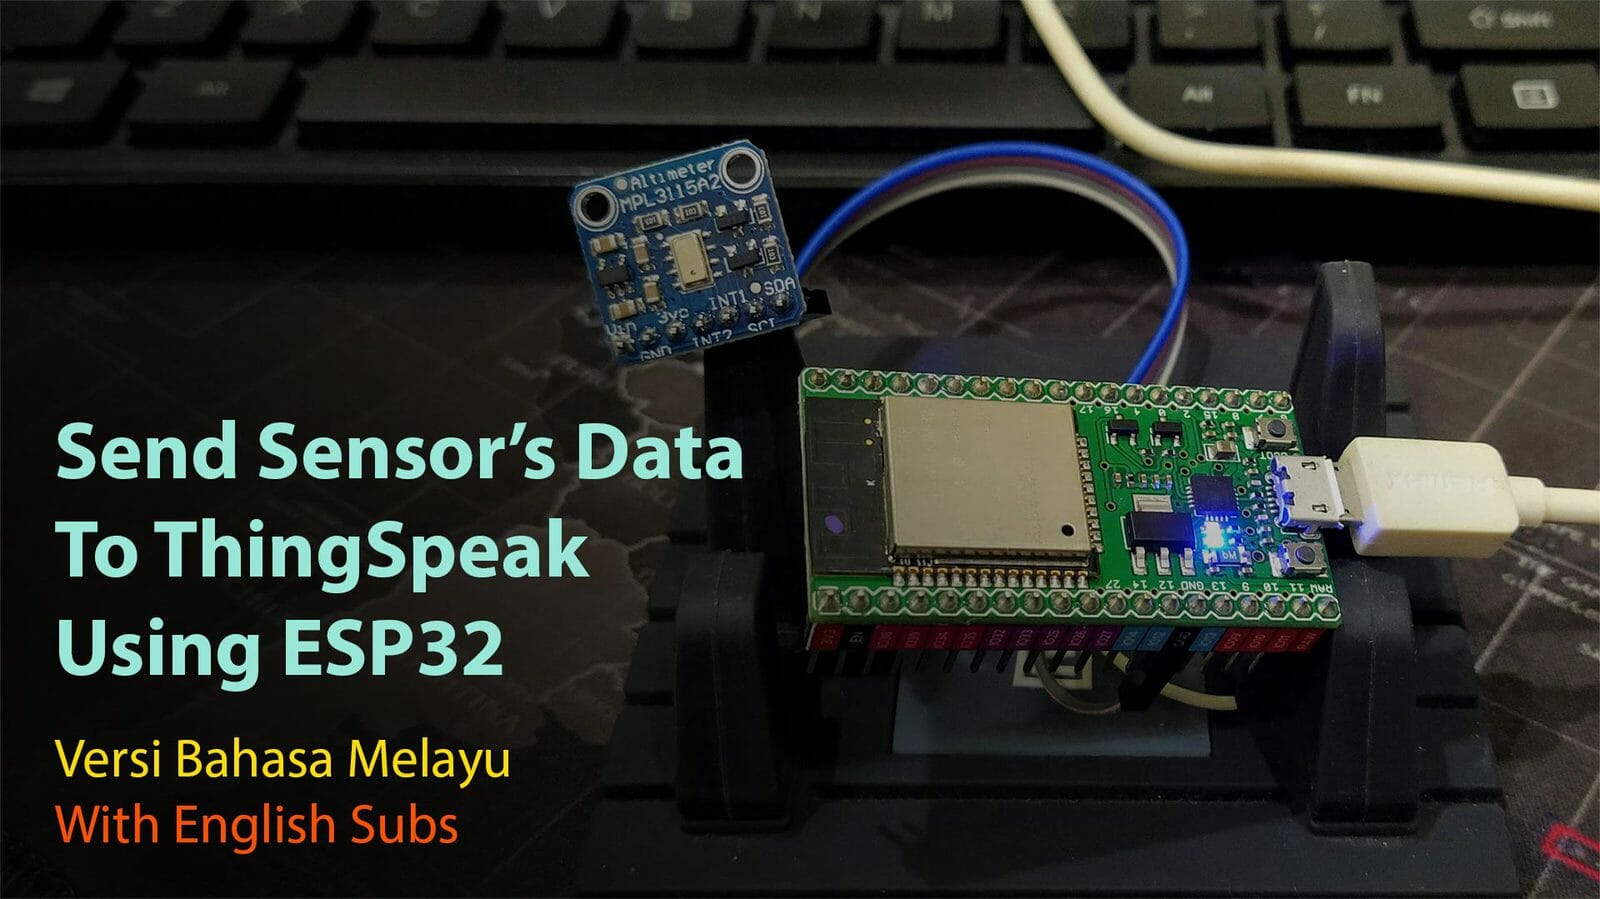 Send Sensor's Data to ThingSpeak Using ESP32